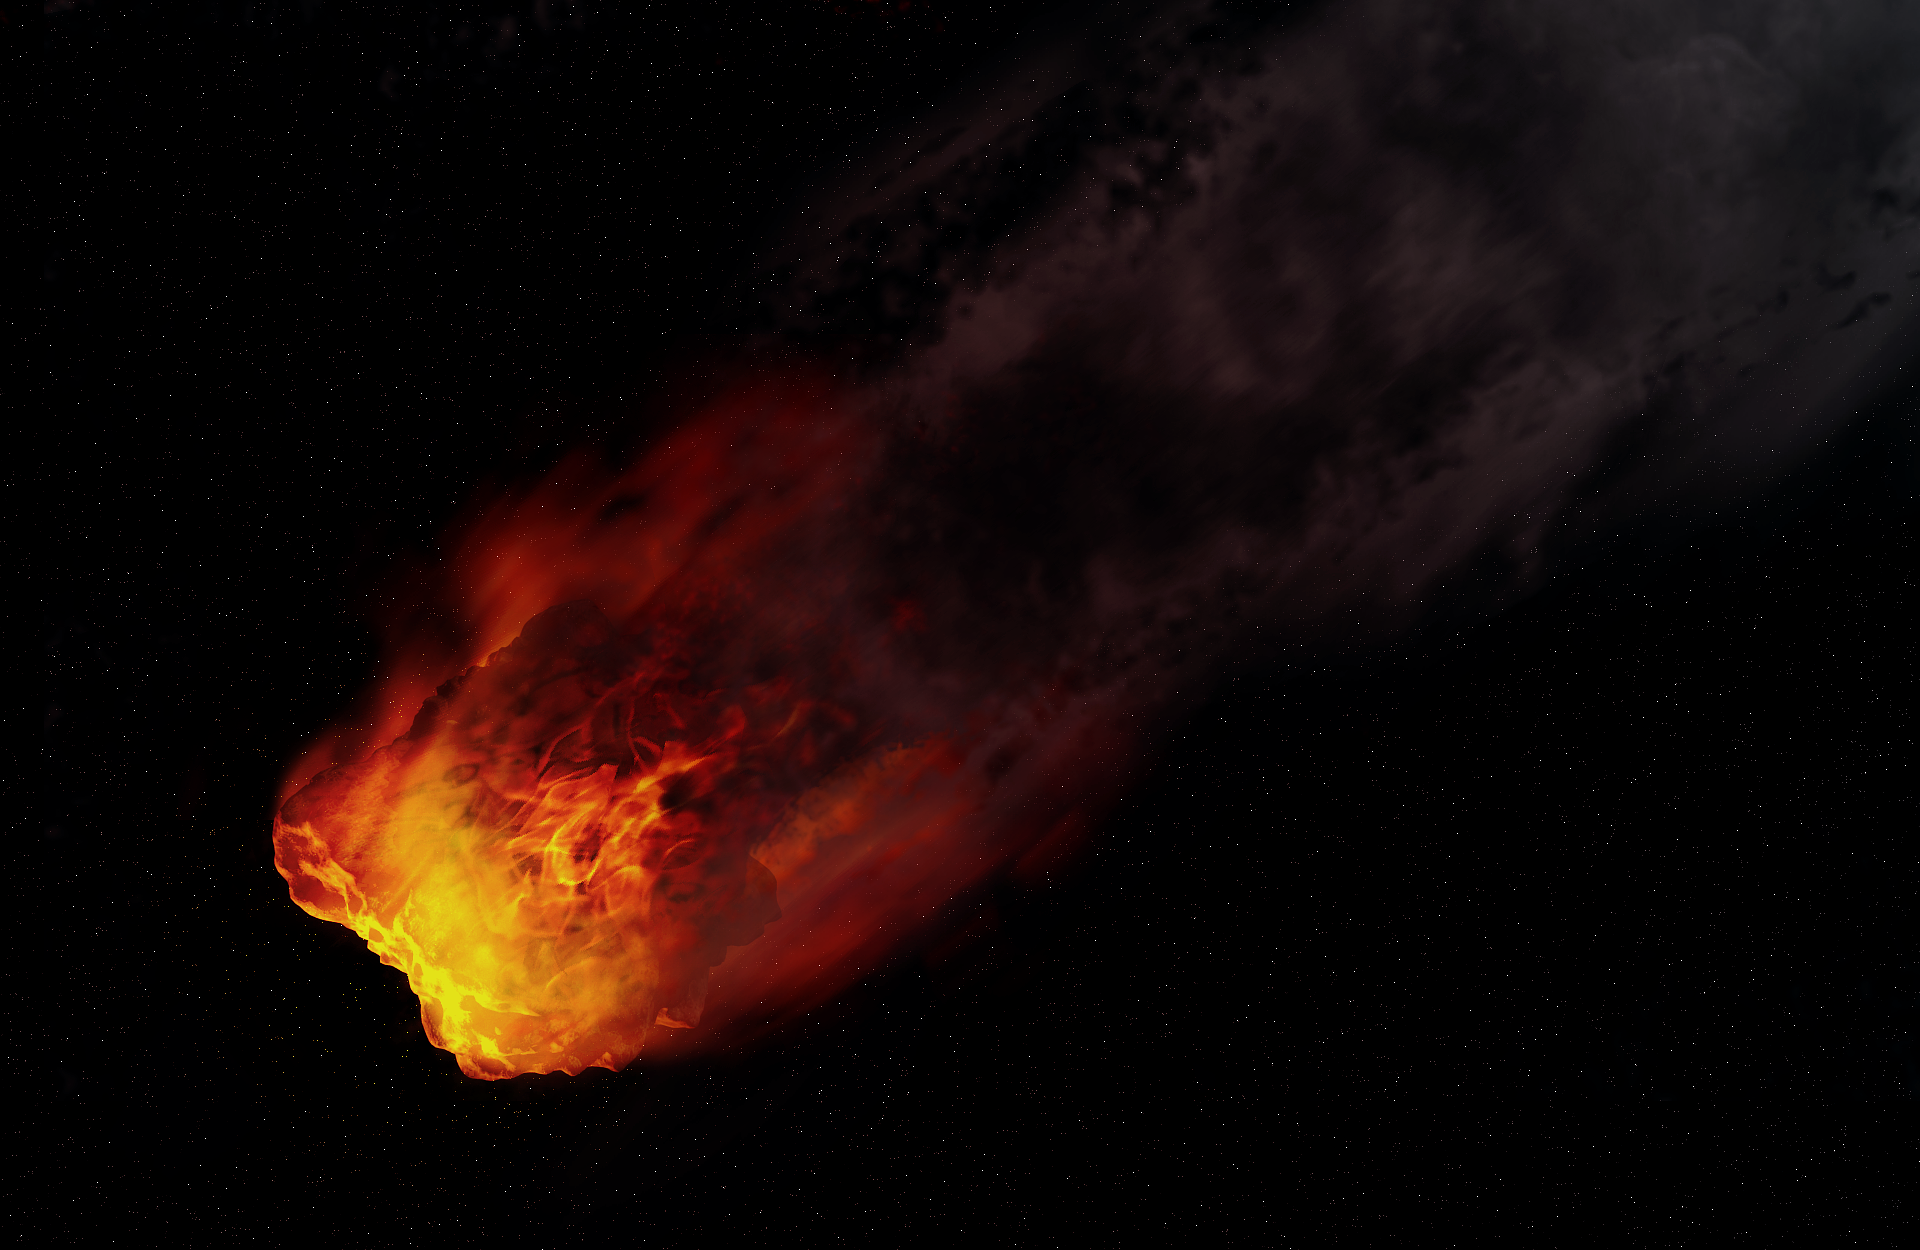 An 'asteroid rich in precious materials'